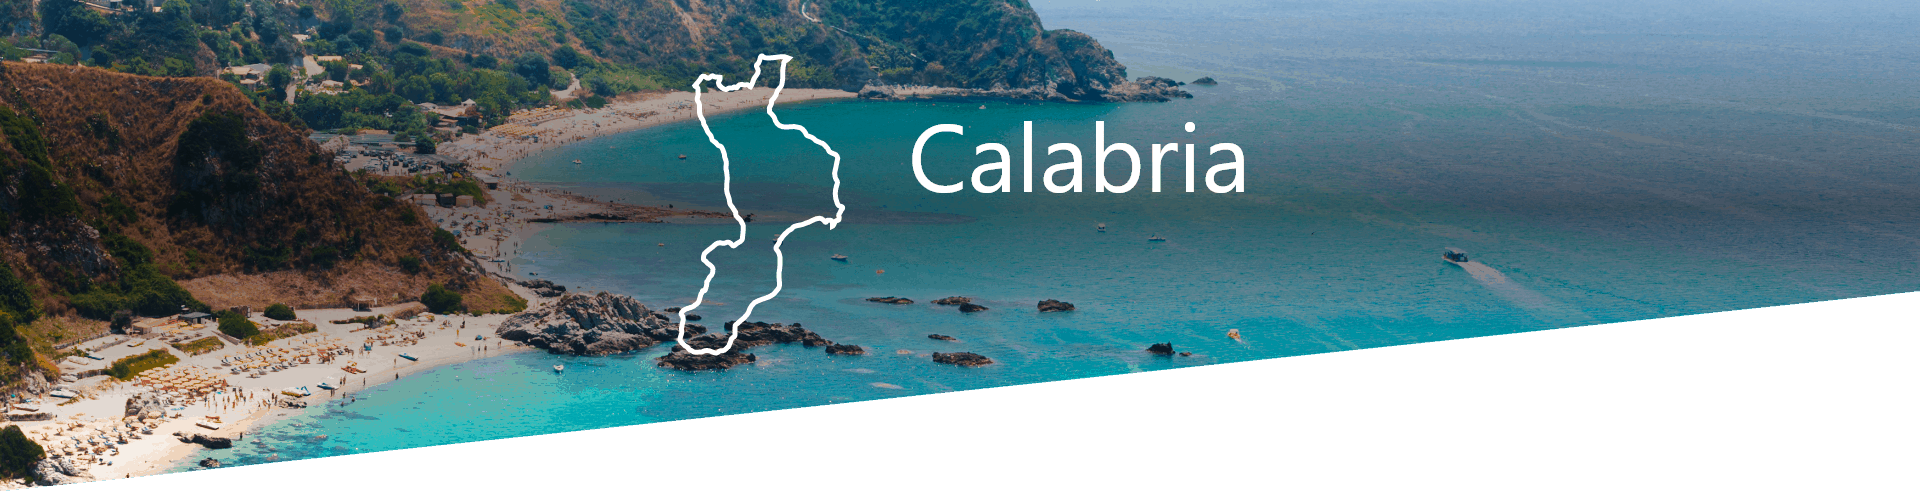 Selezione Vini e Cantine in Calabria